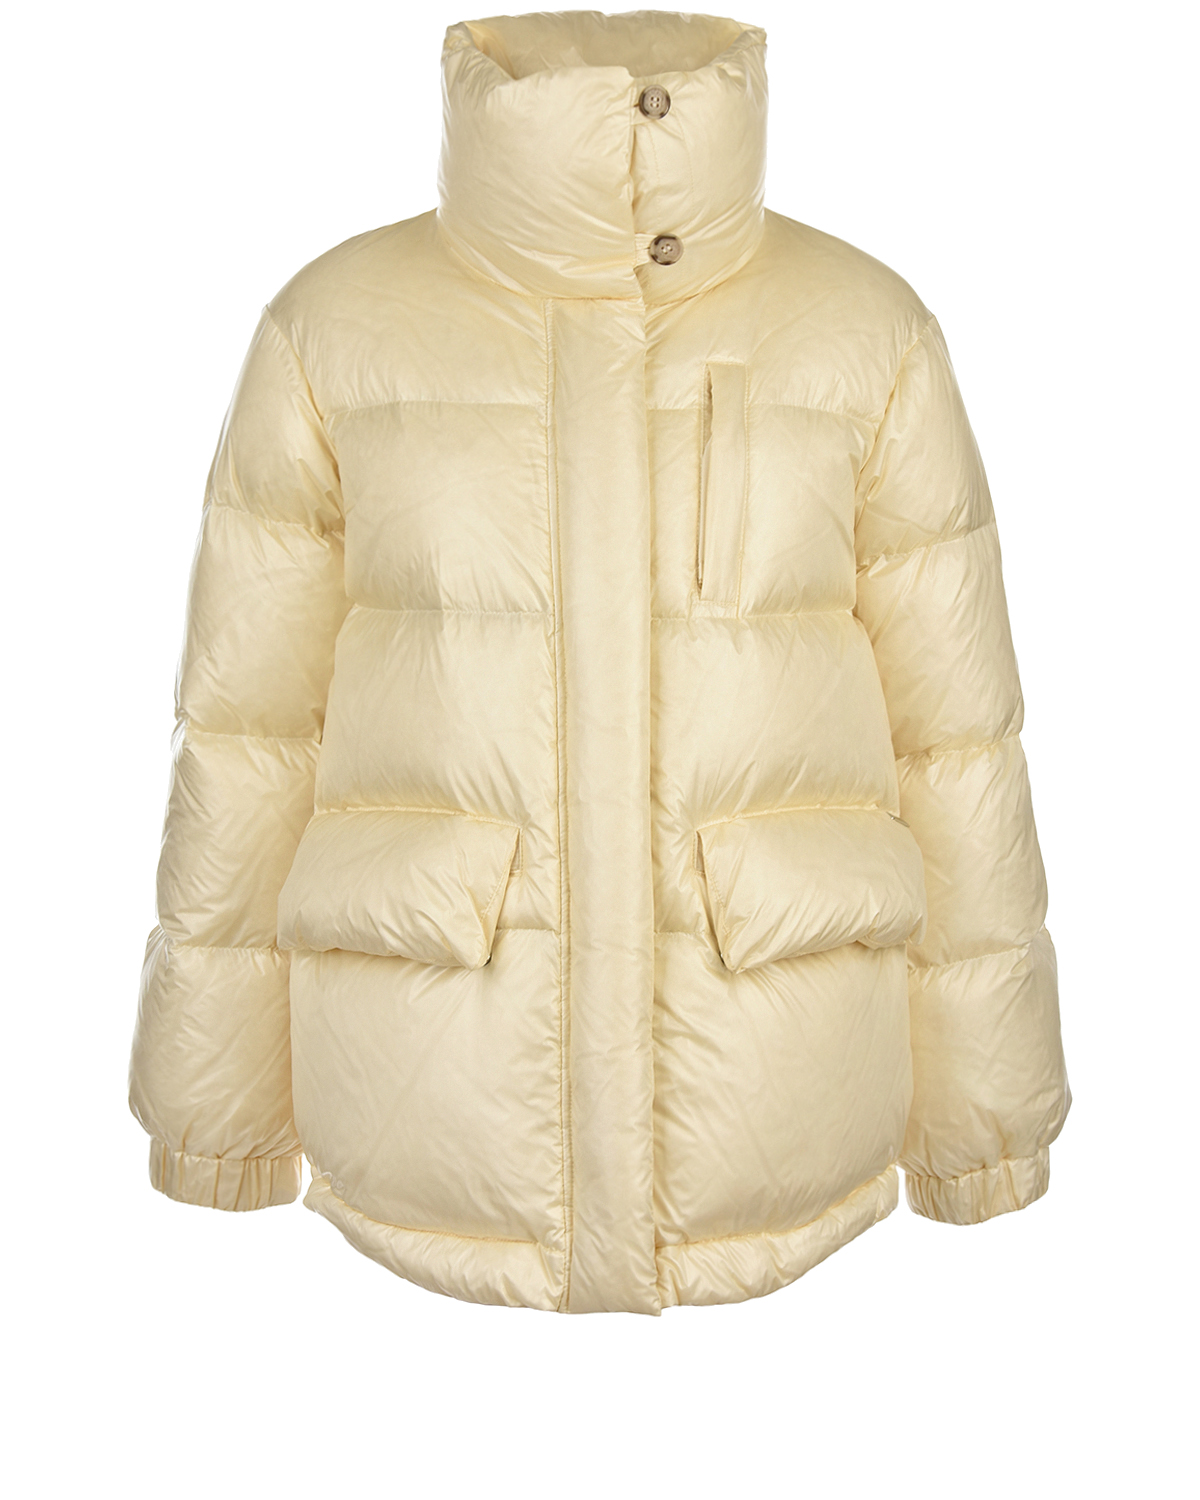 Куртка молочного цвета с воротником-стойкой Woolrich, размер 42